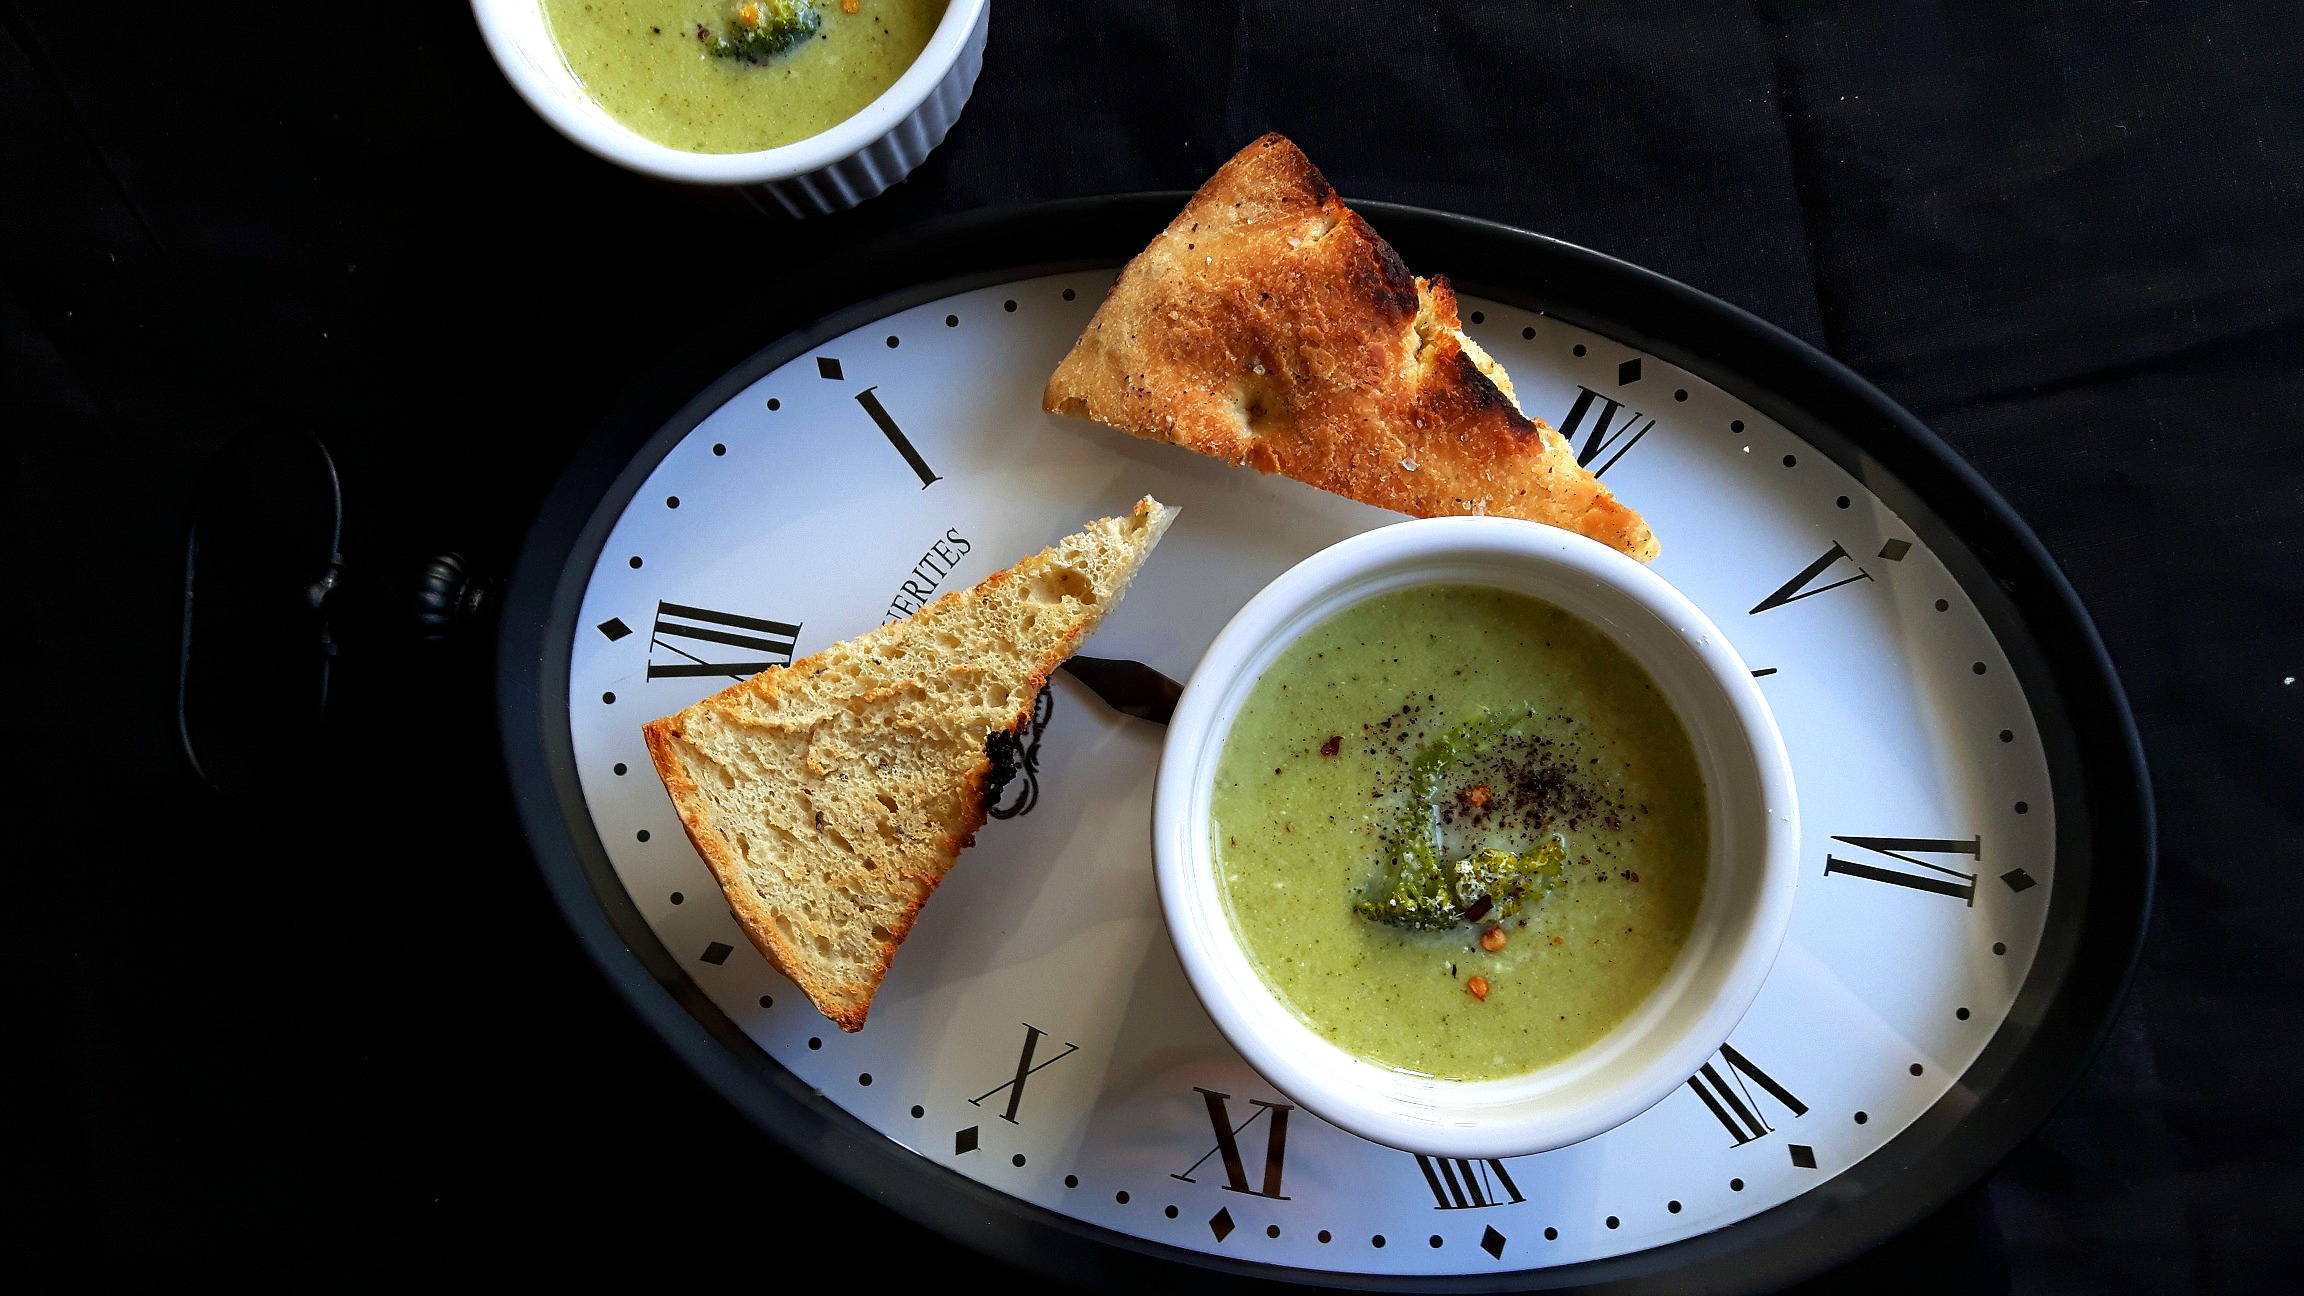 Supă cremă de broccoli - hrană verde pentru suflet :)